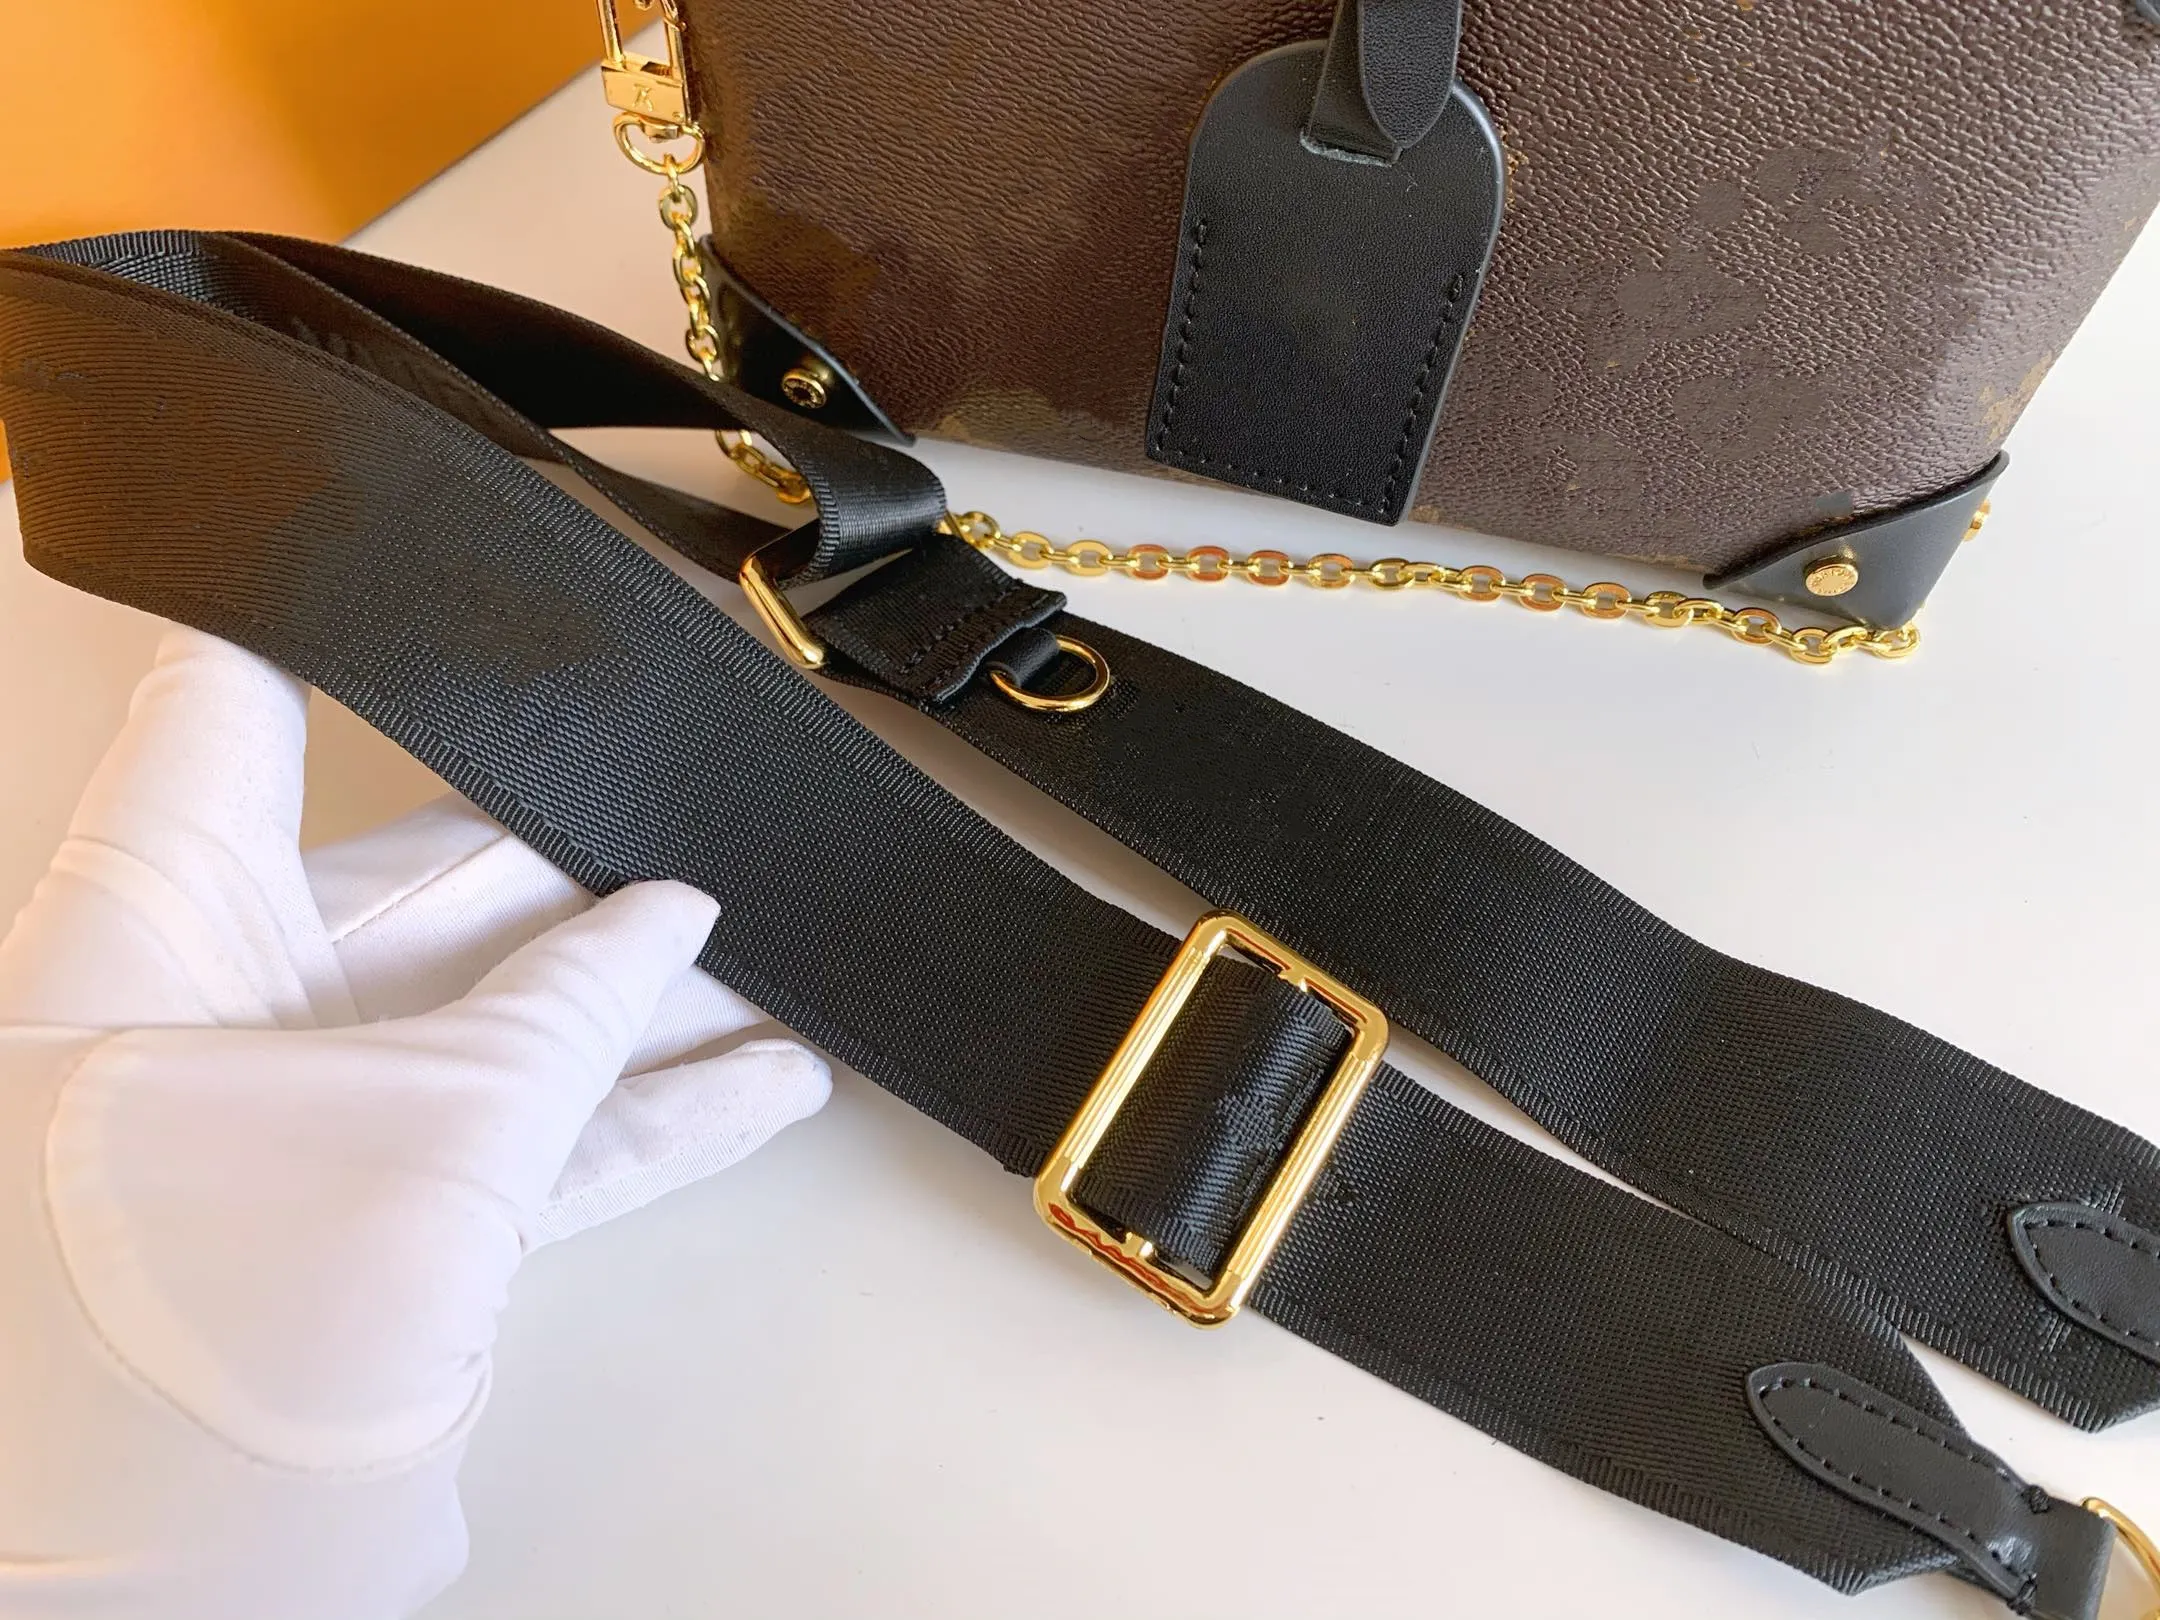 Luxury bag PETITE MALLE SOUPLE ladies handbags full leather black handbag embossed wallet